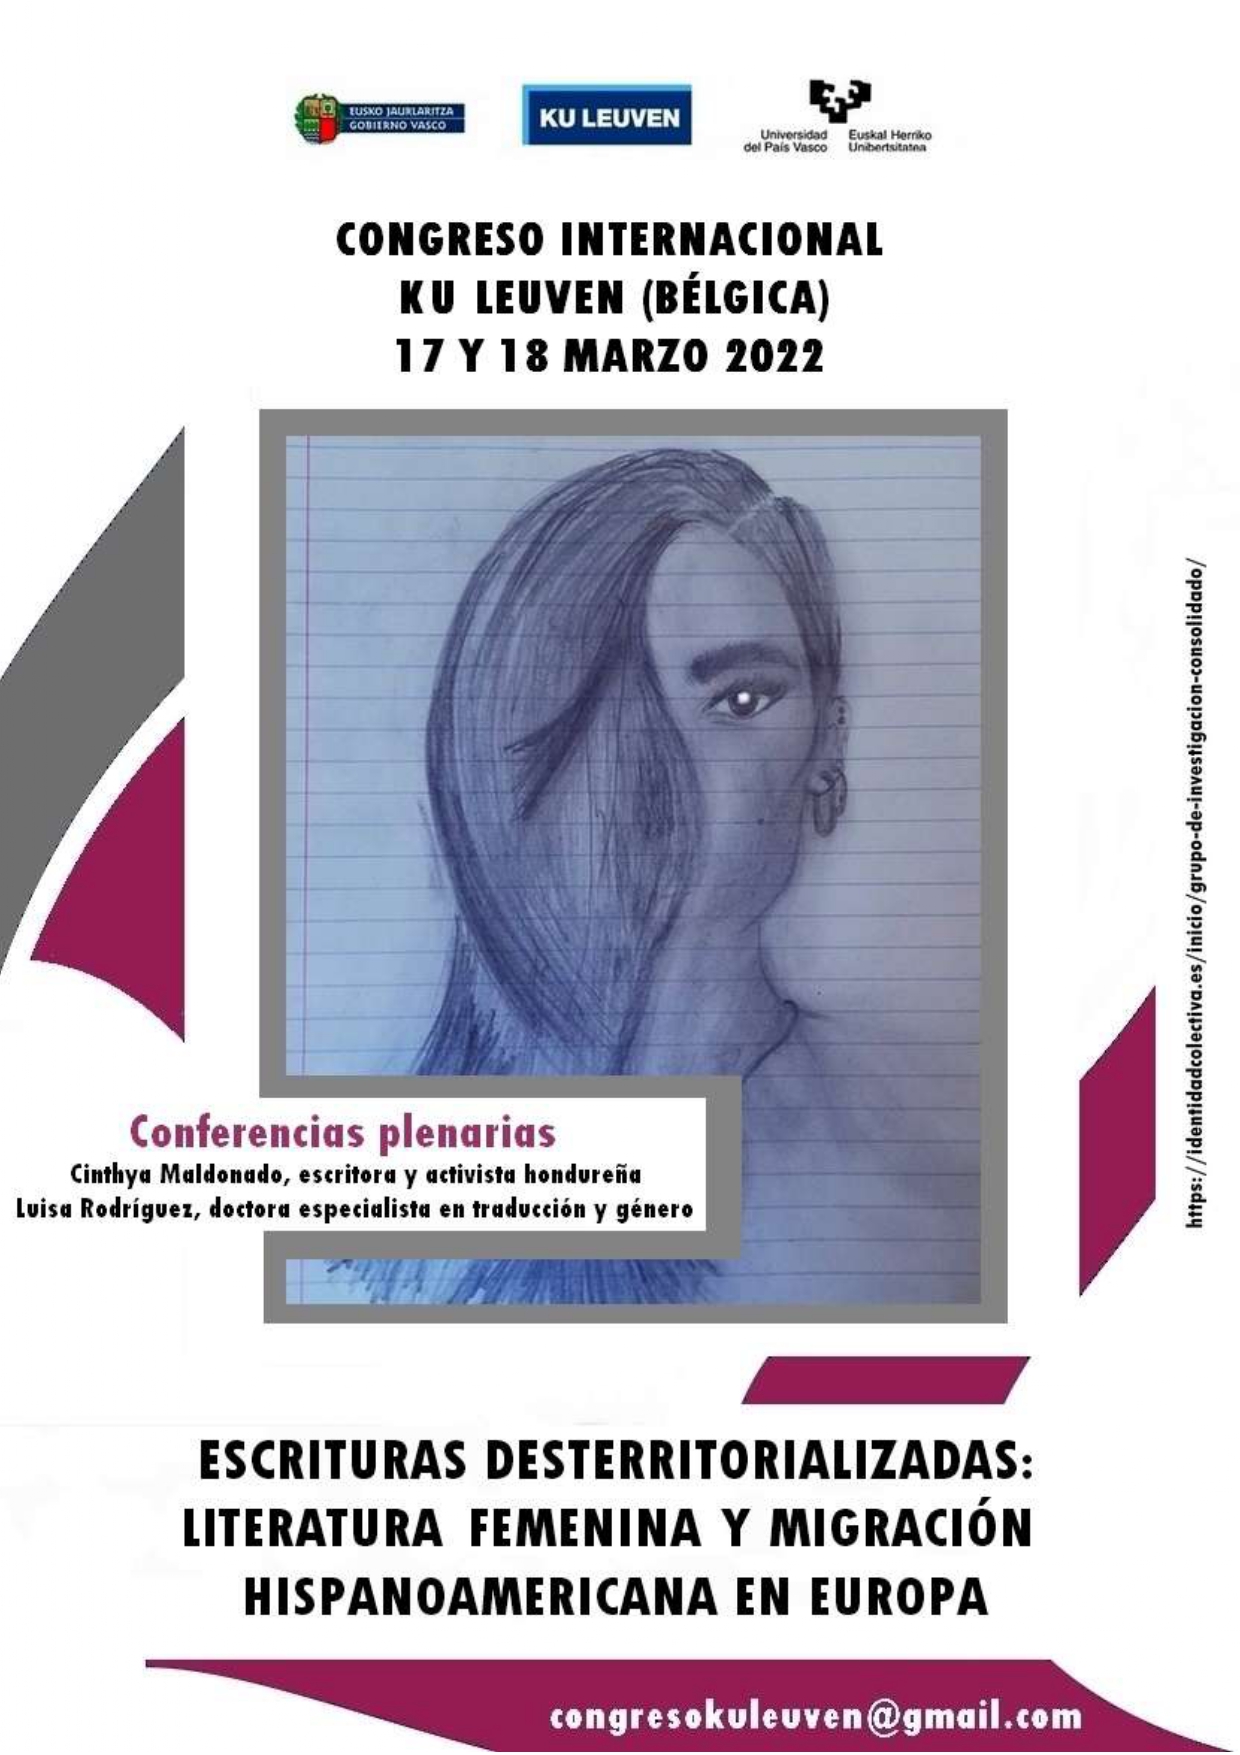 Escrituras desterritorializadas: literatura femenina y migración hispanoamericana en Europa